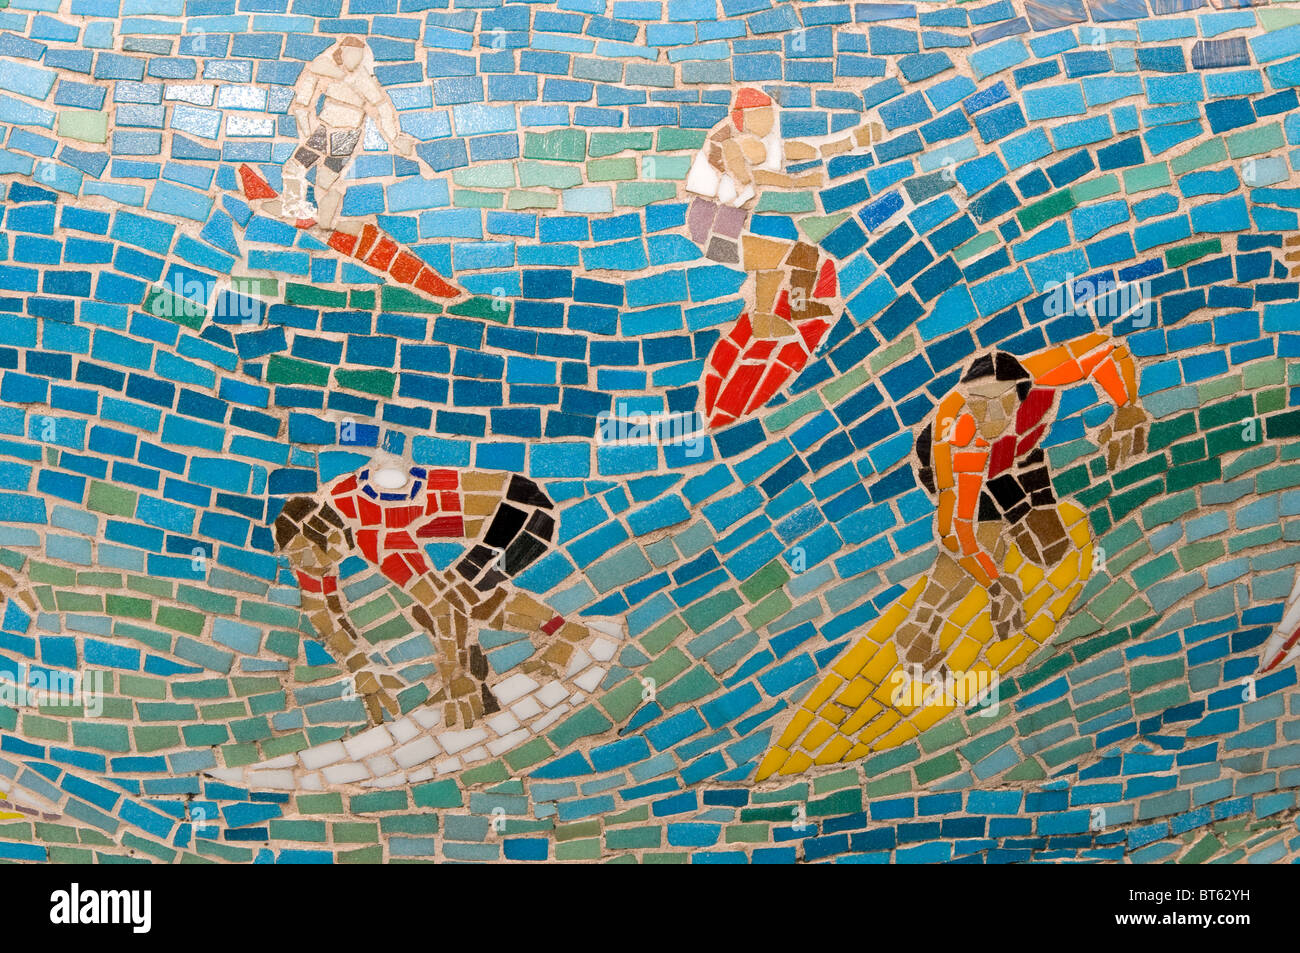 L'art de la céramique, carreaux de mosaïque surfer vague stand up s'hémisphère sud Australie Aussie bondi beach south east Australasia nouvelle s Banque D'Images